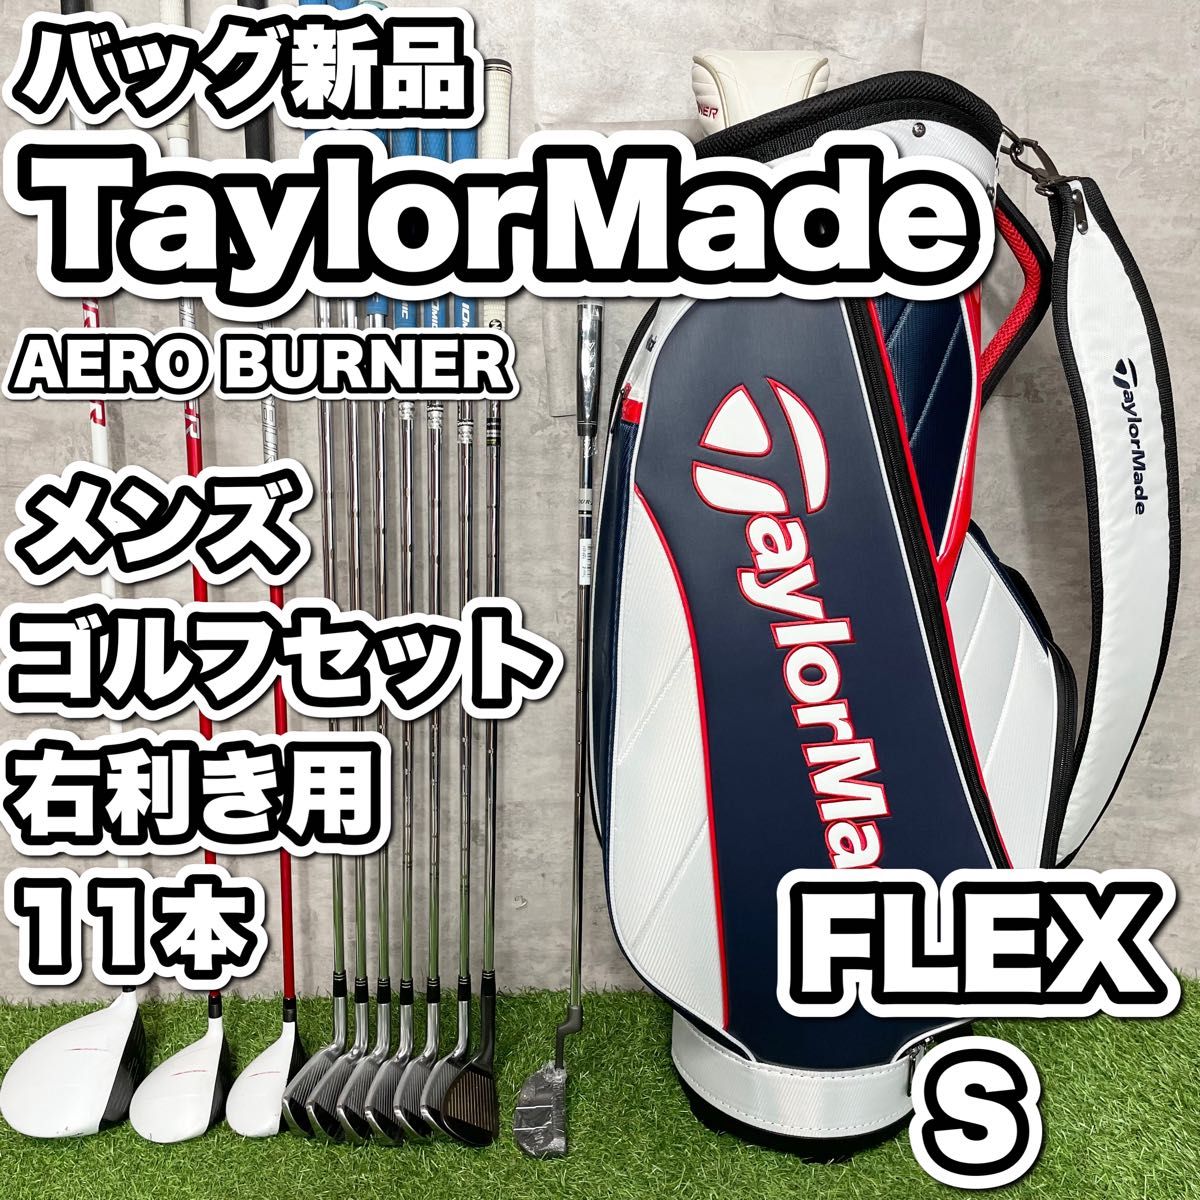 【バッグ新品】TaylorMade テーラーメイド AERO BURNER ゴルフクラブセット メンズ S 11本 右利き用